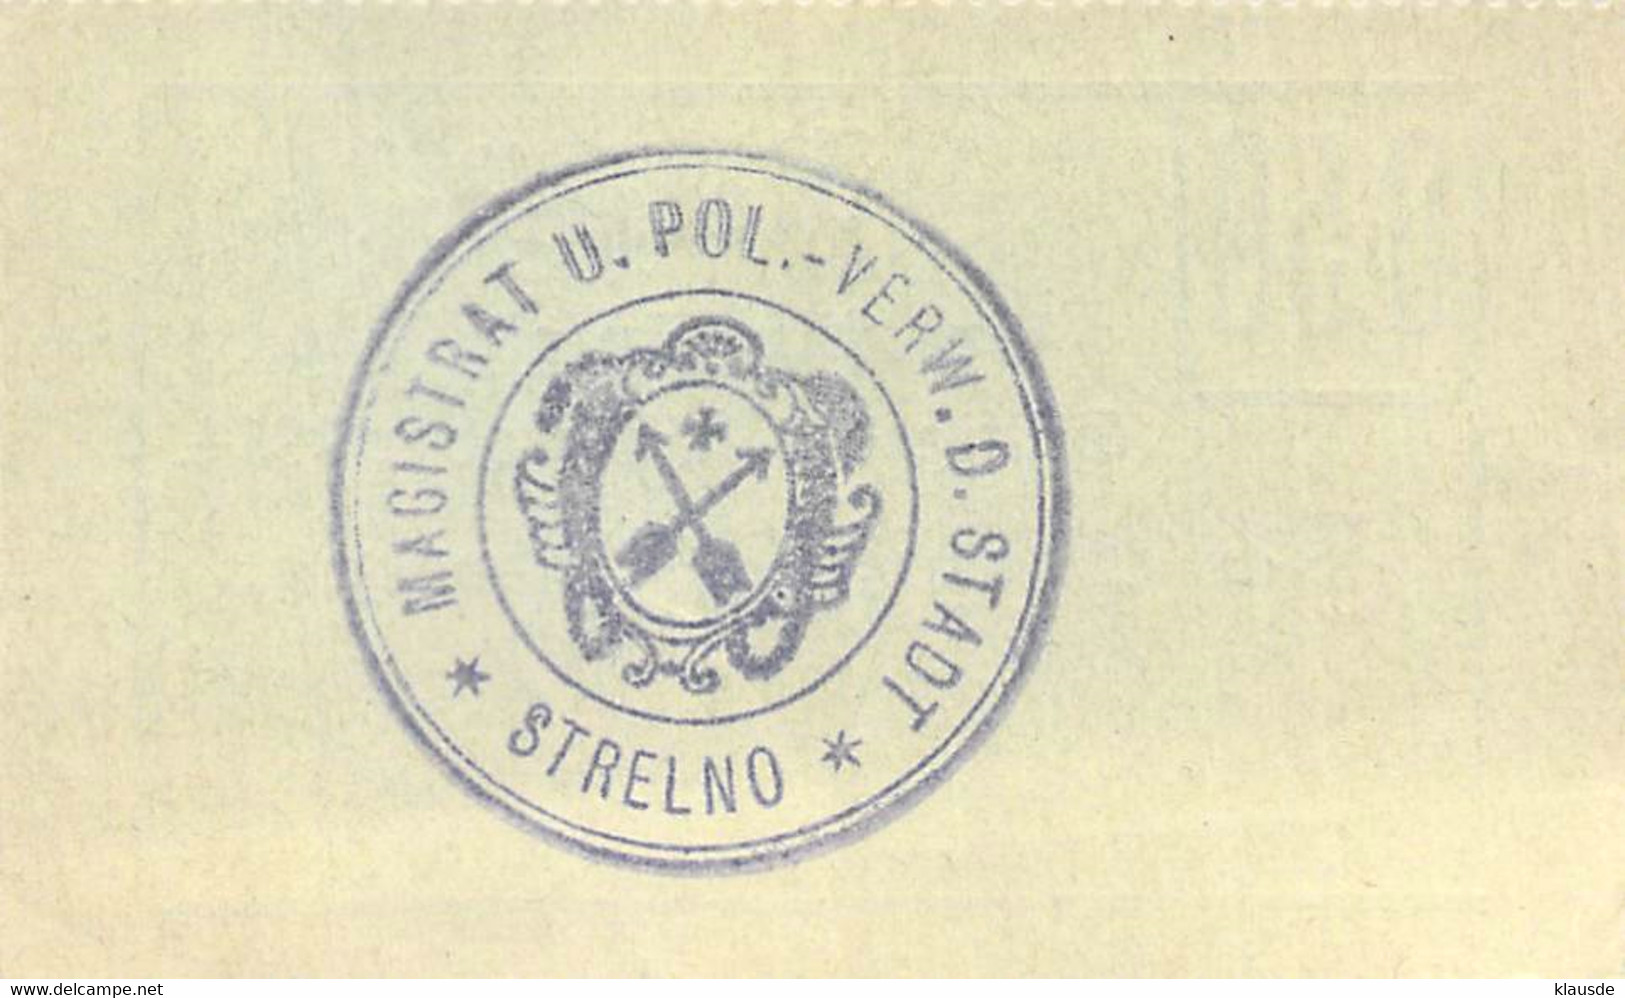 Strelno (Strzelno) Pommern 3  Notgeldschein 1914 UNC - WWI